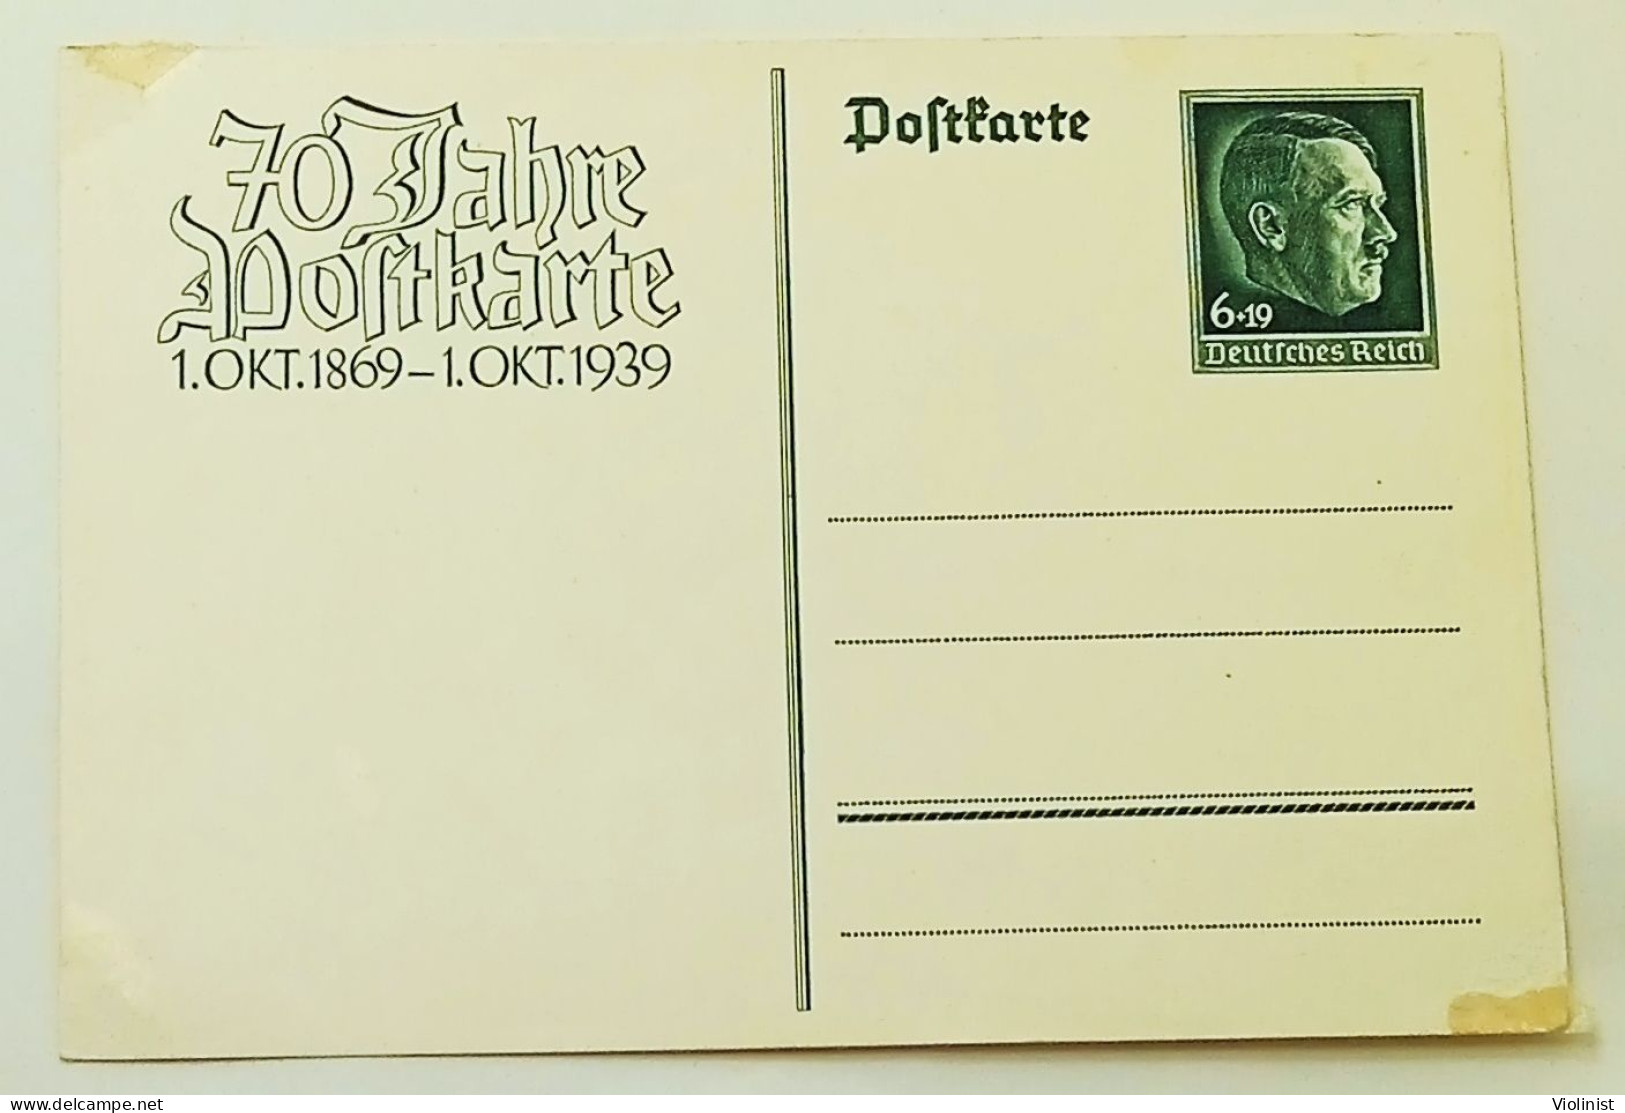 Deutsches Reich-70 Jahre Postkarte 1.OKT.1869.-1-OKT.1939. - Officials